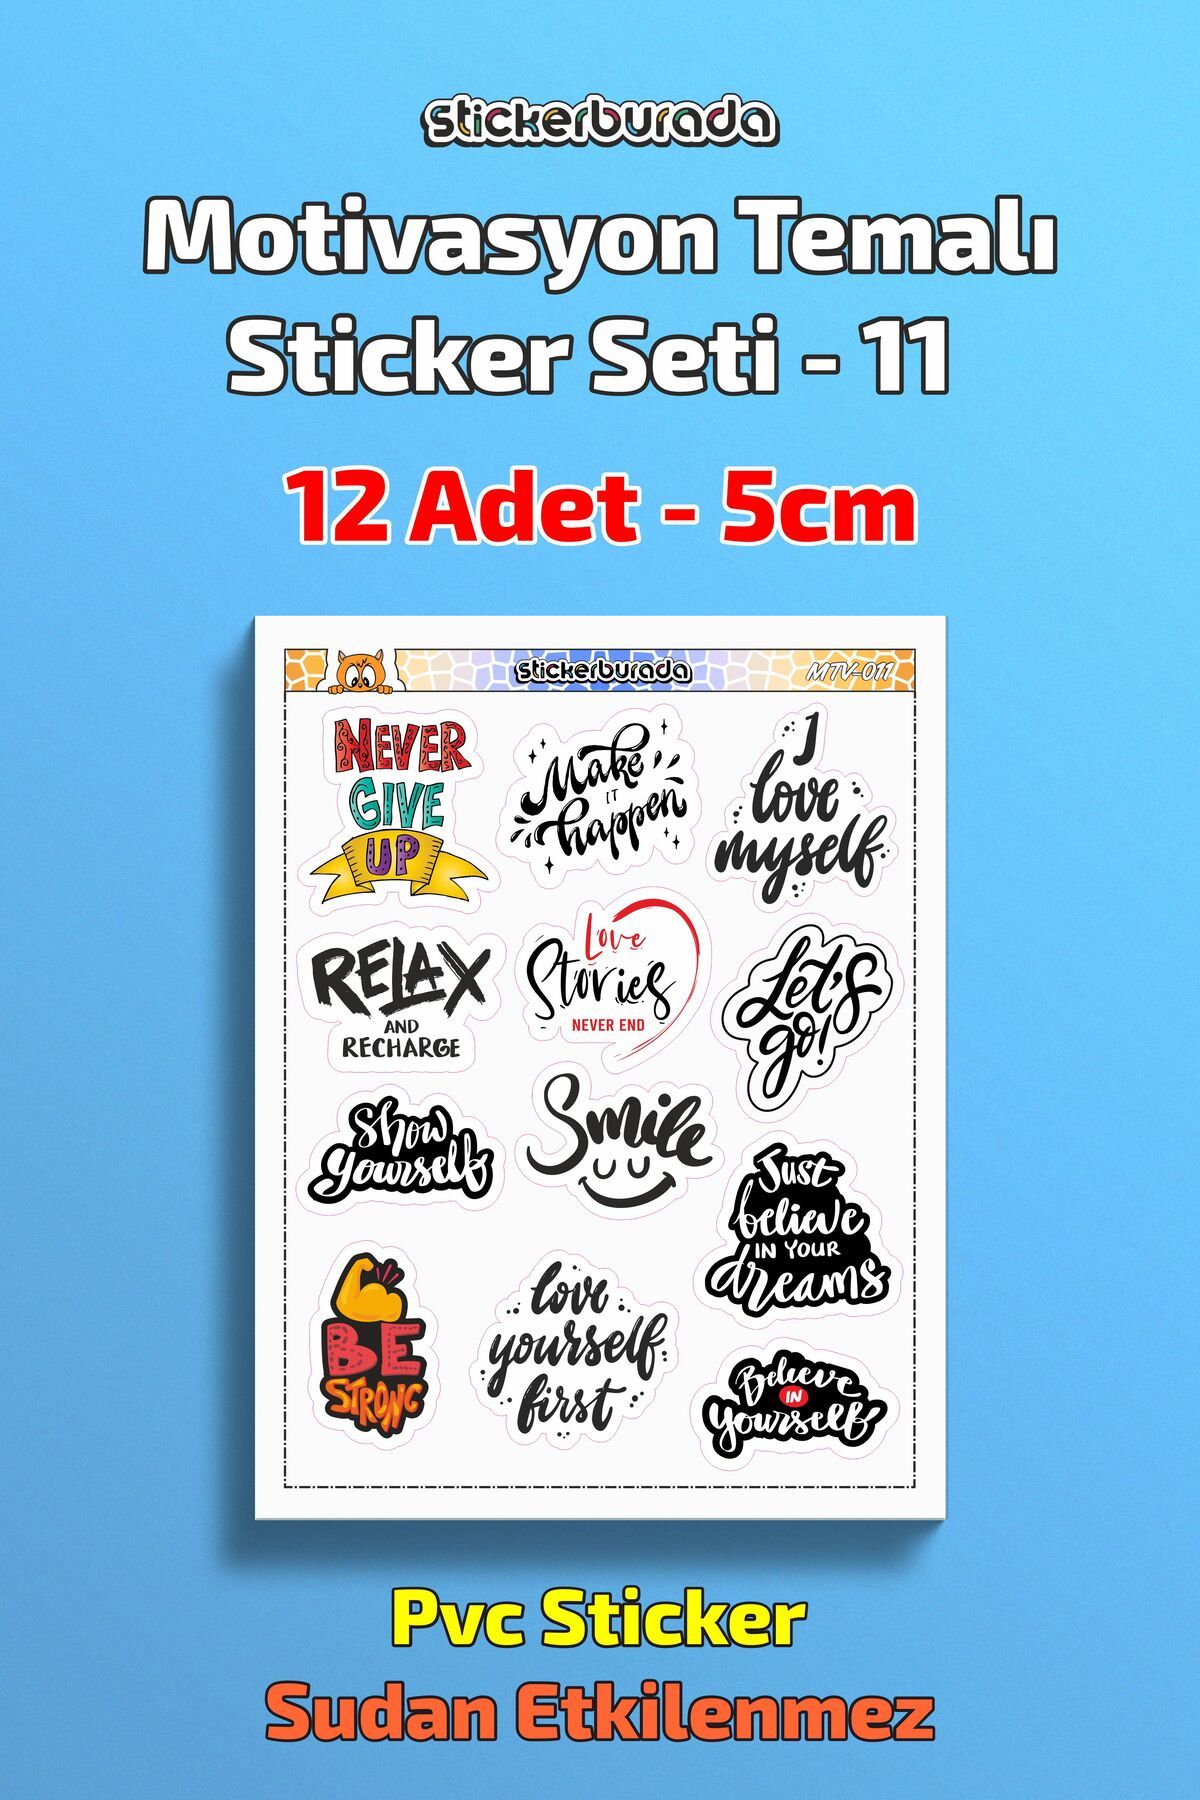 Stb design Motivasyon Temalı Sticker Etiket Seti - 11 - Notebook - Duvar Sticker - Bullet Journal - Scrapbook